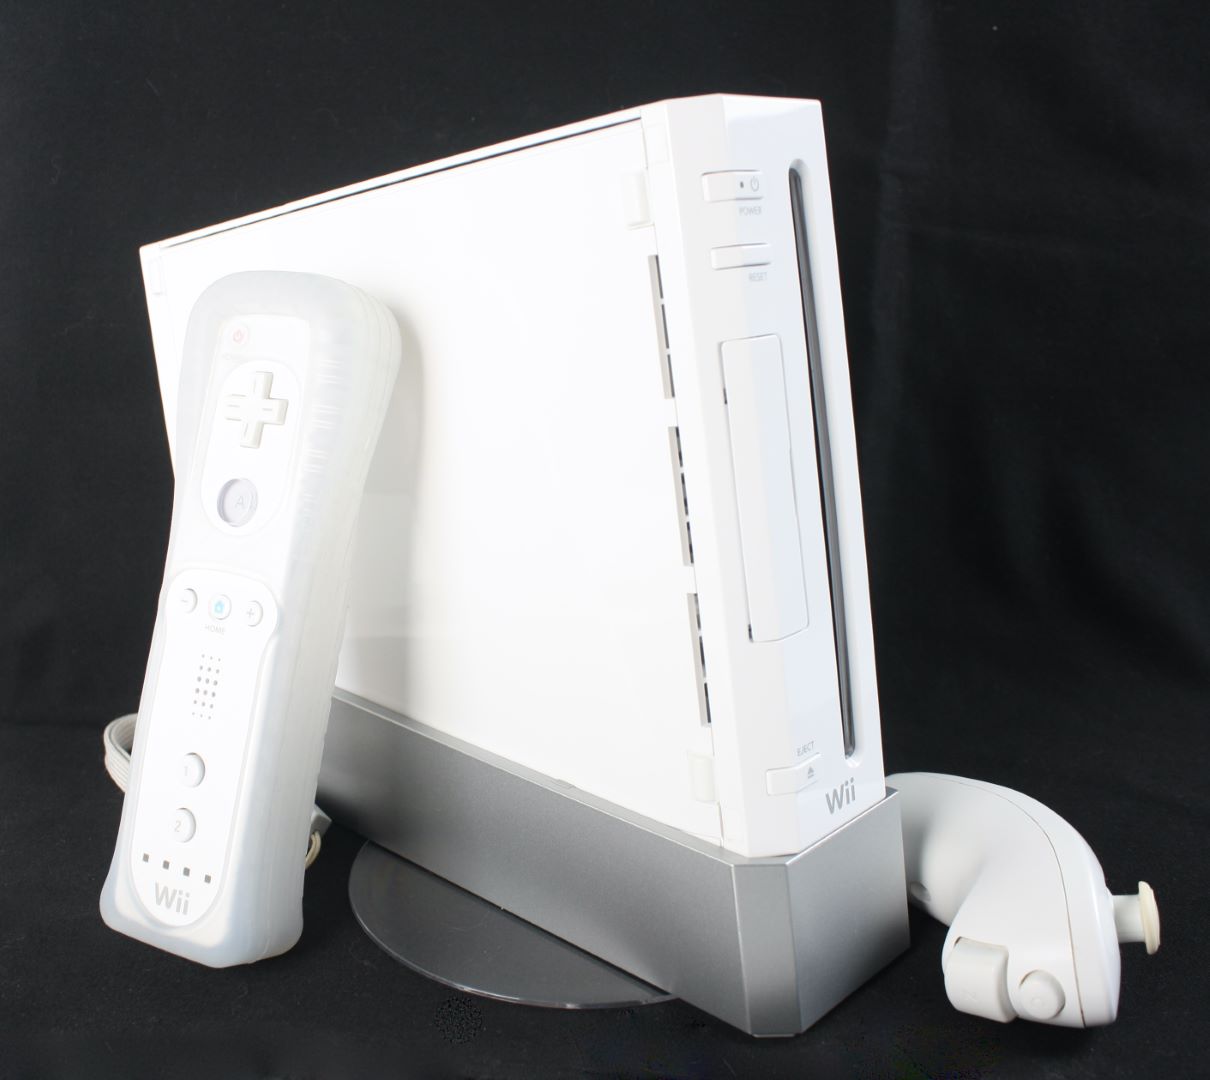  Jeux Pour Nintendo Wii - Jeux Pour Nintendo Wii / Nintendo Wii:  Consoles, Jeux  : Jeux Vidéo